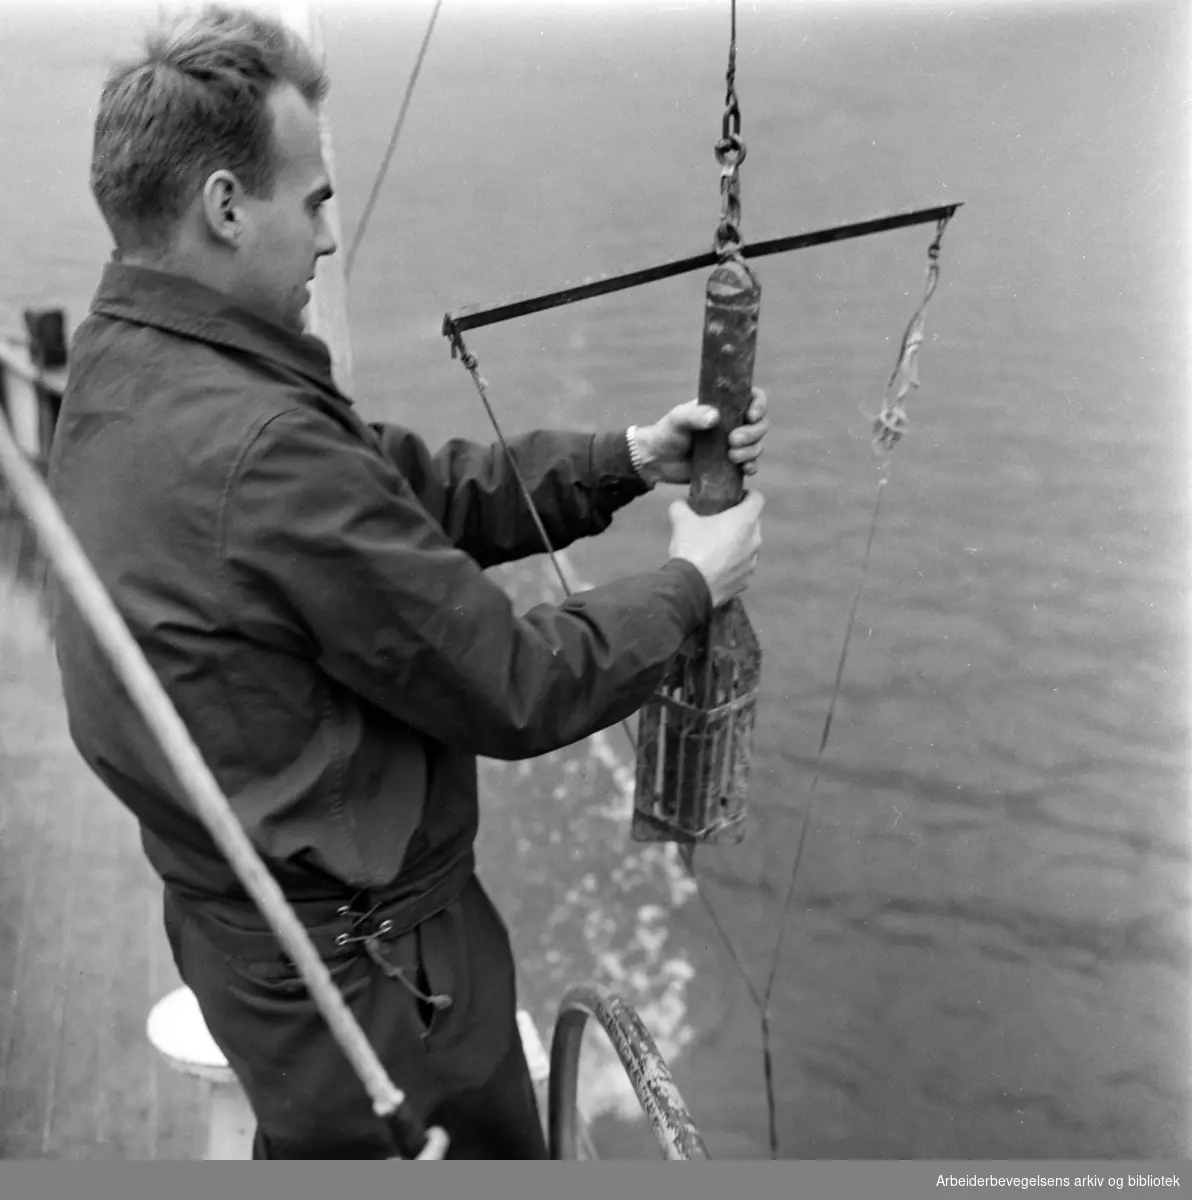 Lasse Berglind fra Vannforskningsinstituttet tar vannprøver i Indre Oslofjord. Bilde fra forskningskutteren "Gunnar Knudsen". Oktober 1960